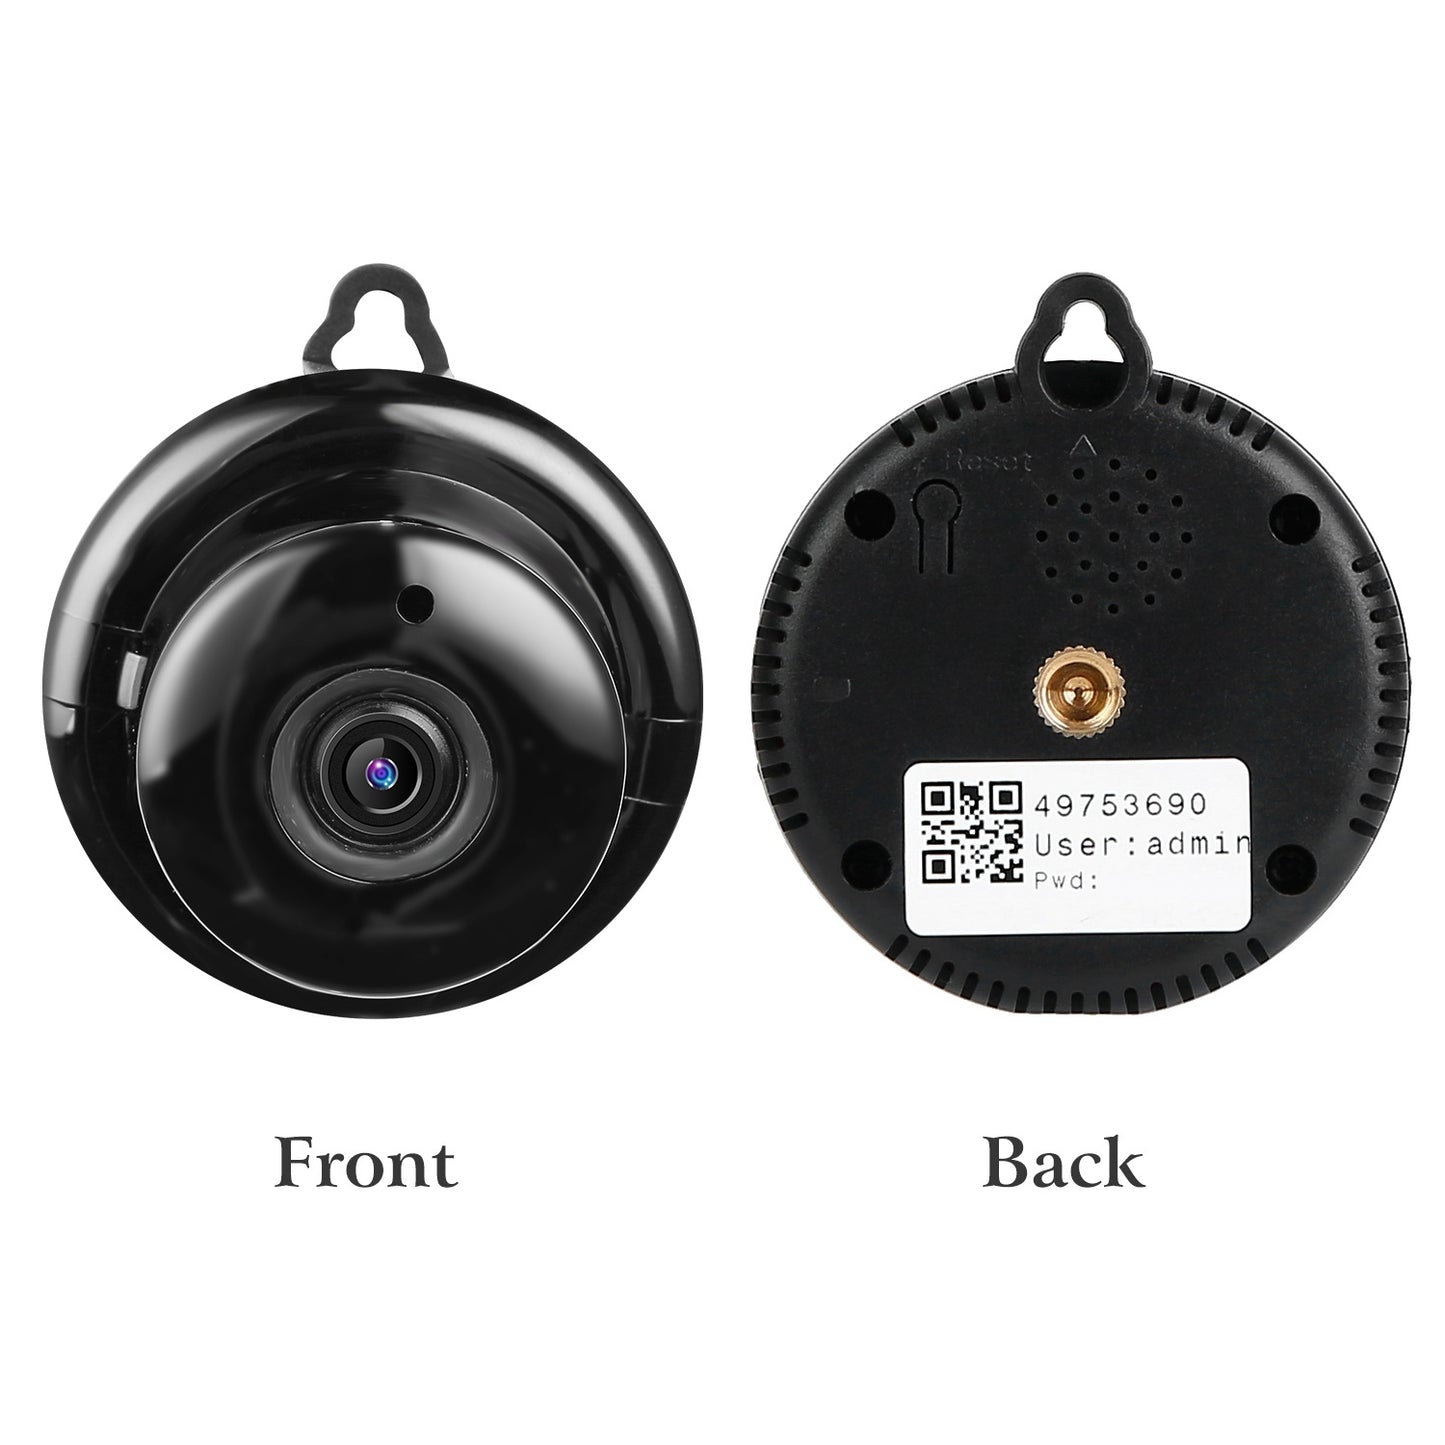 Smart Home Security Surveillance Camera